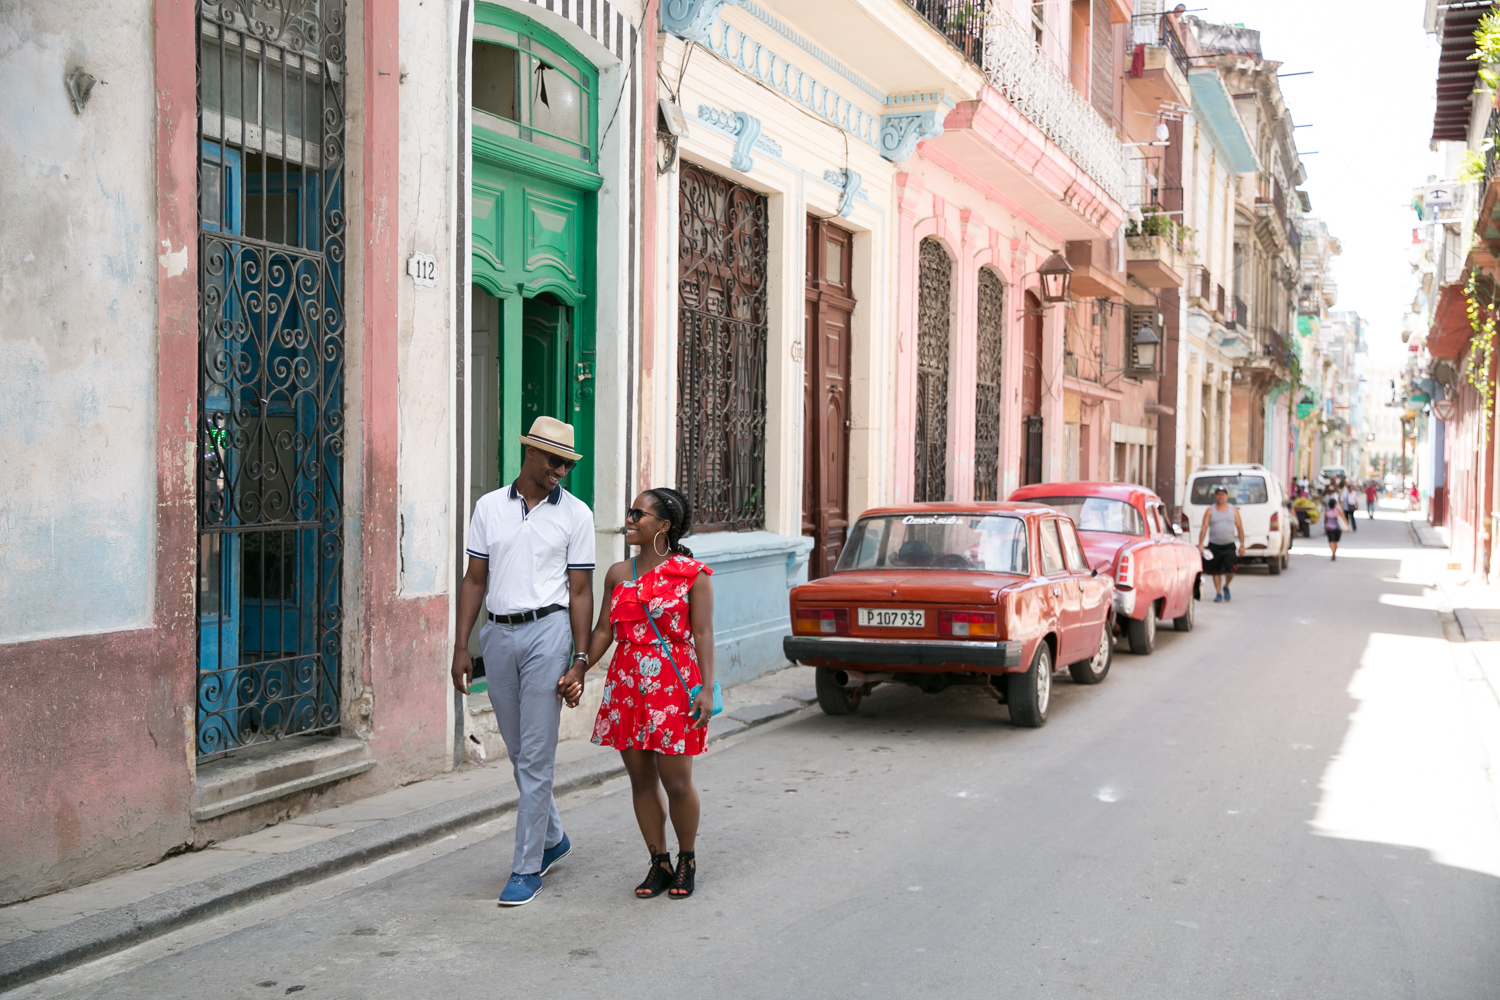 13 Best Vacation Destinations For Black Couples - Travel Noire